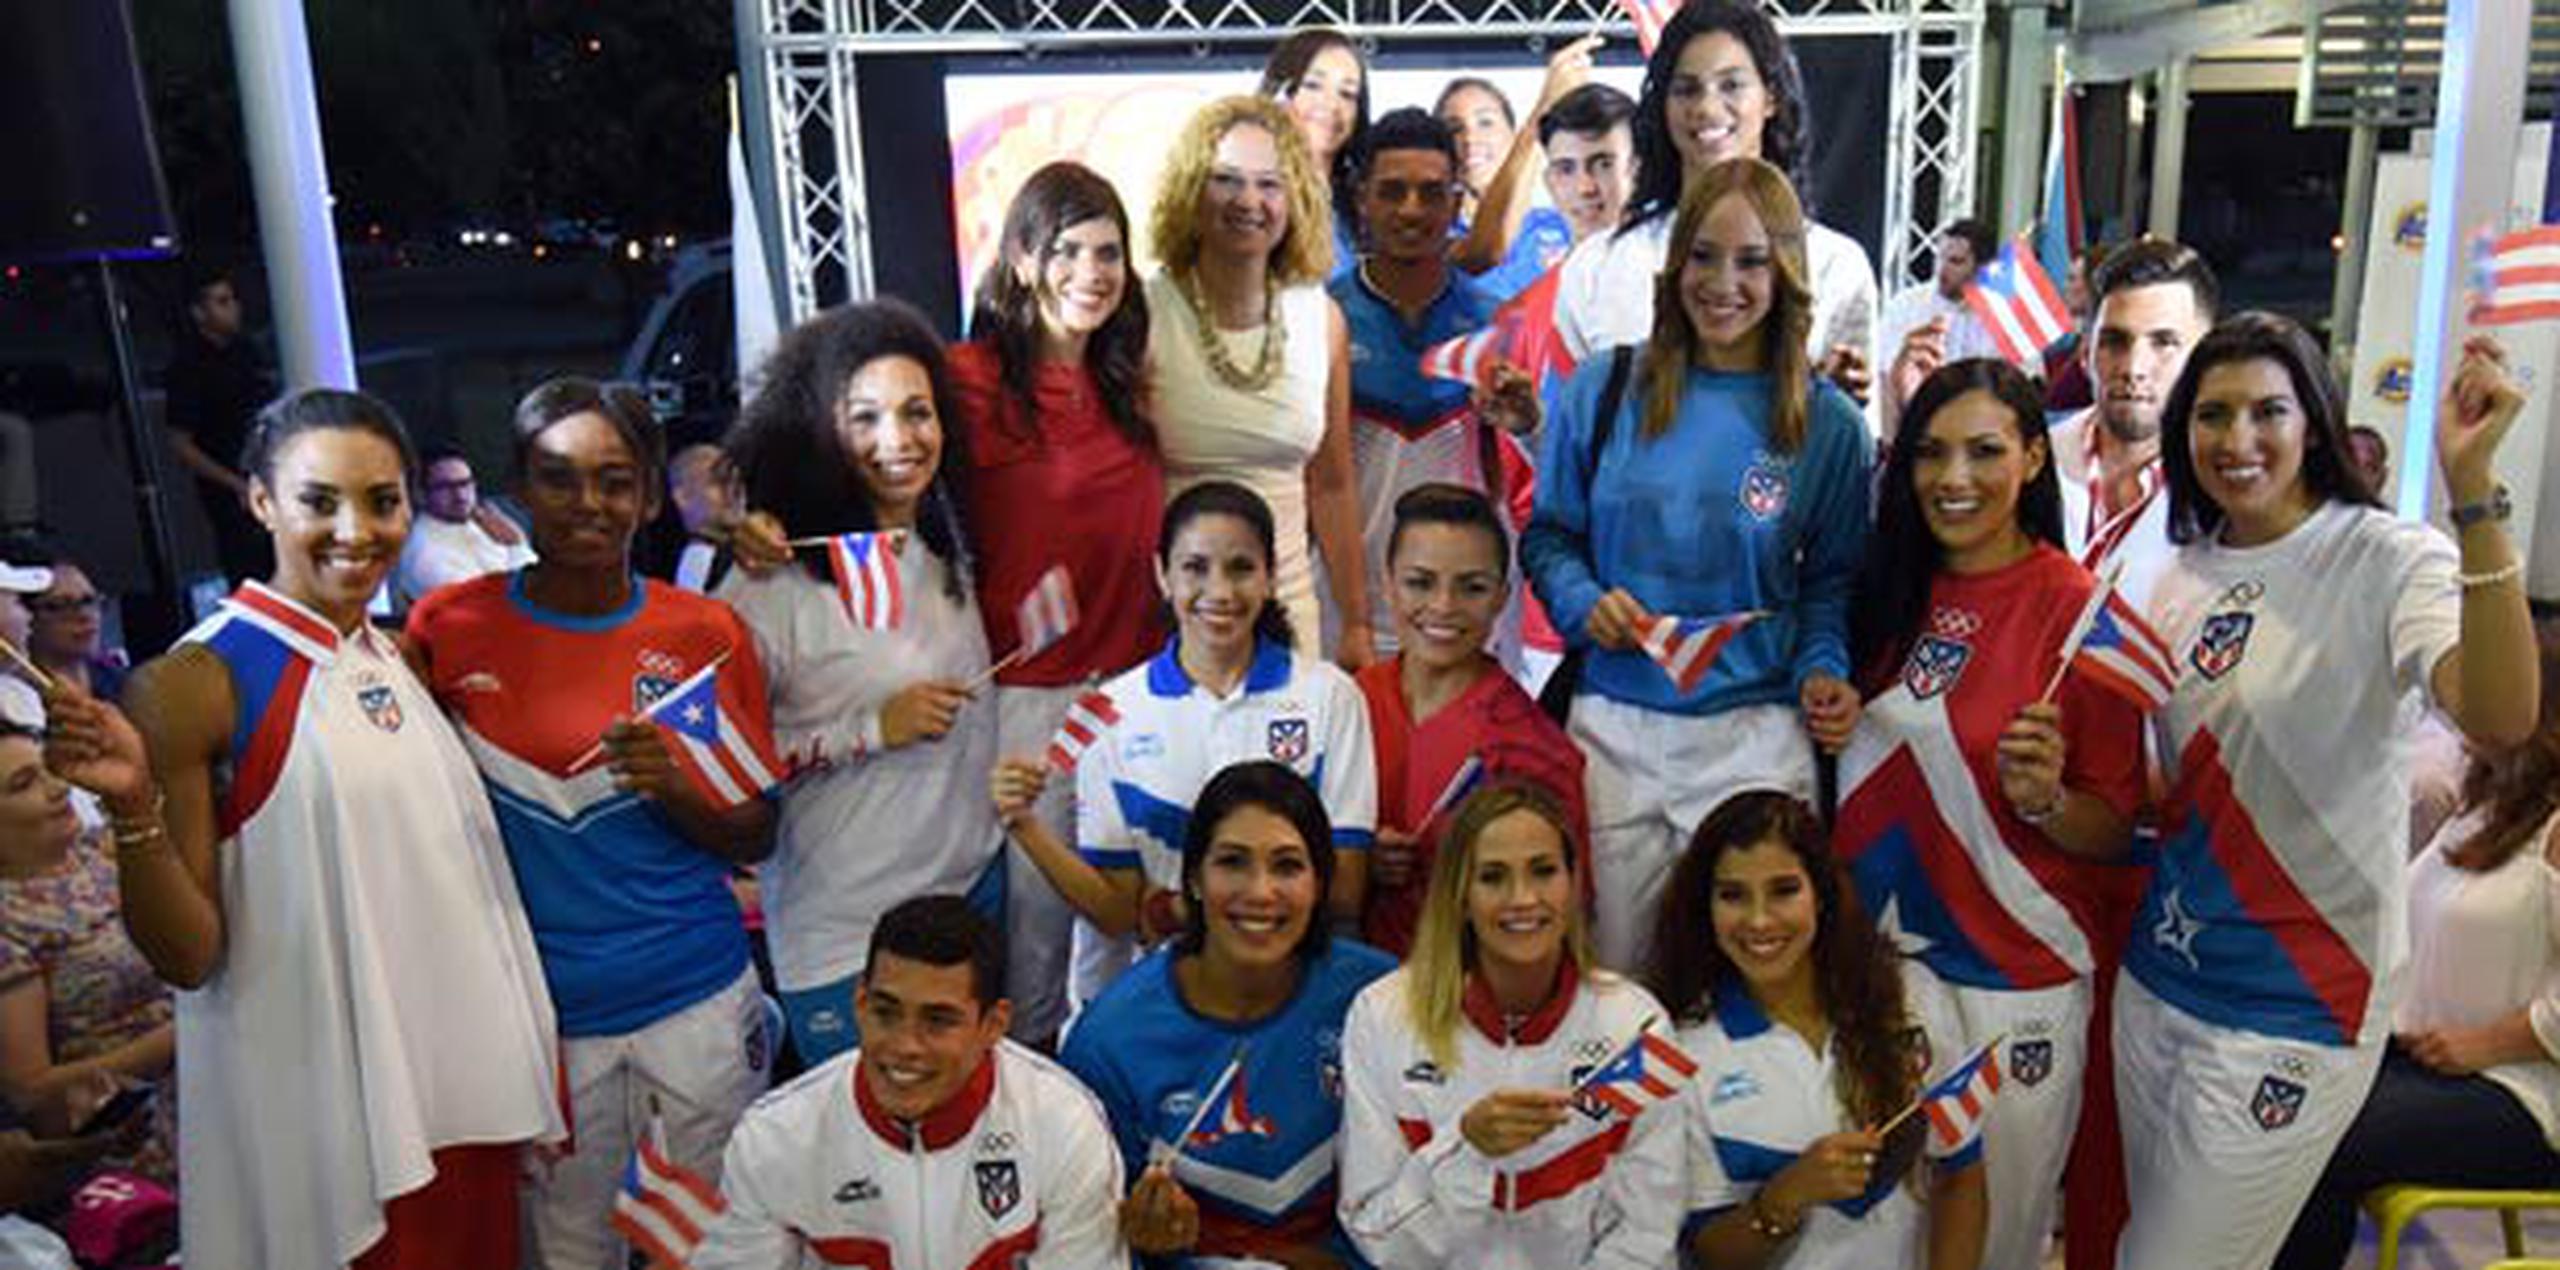 Puerto Rico asistirá a las Olimpiadas con un total de 41 atletas. (andre.kang@gfrmedia.com)